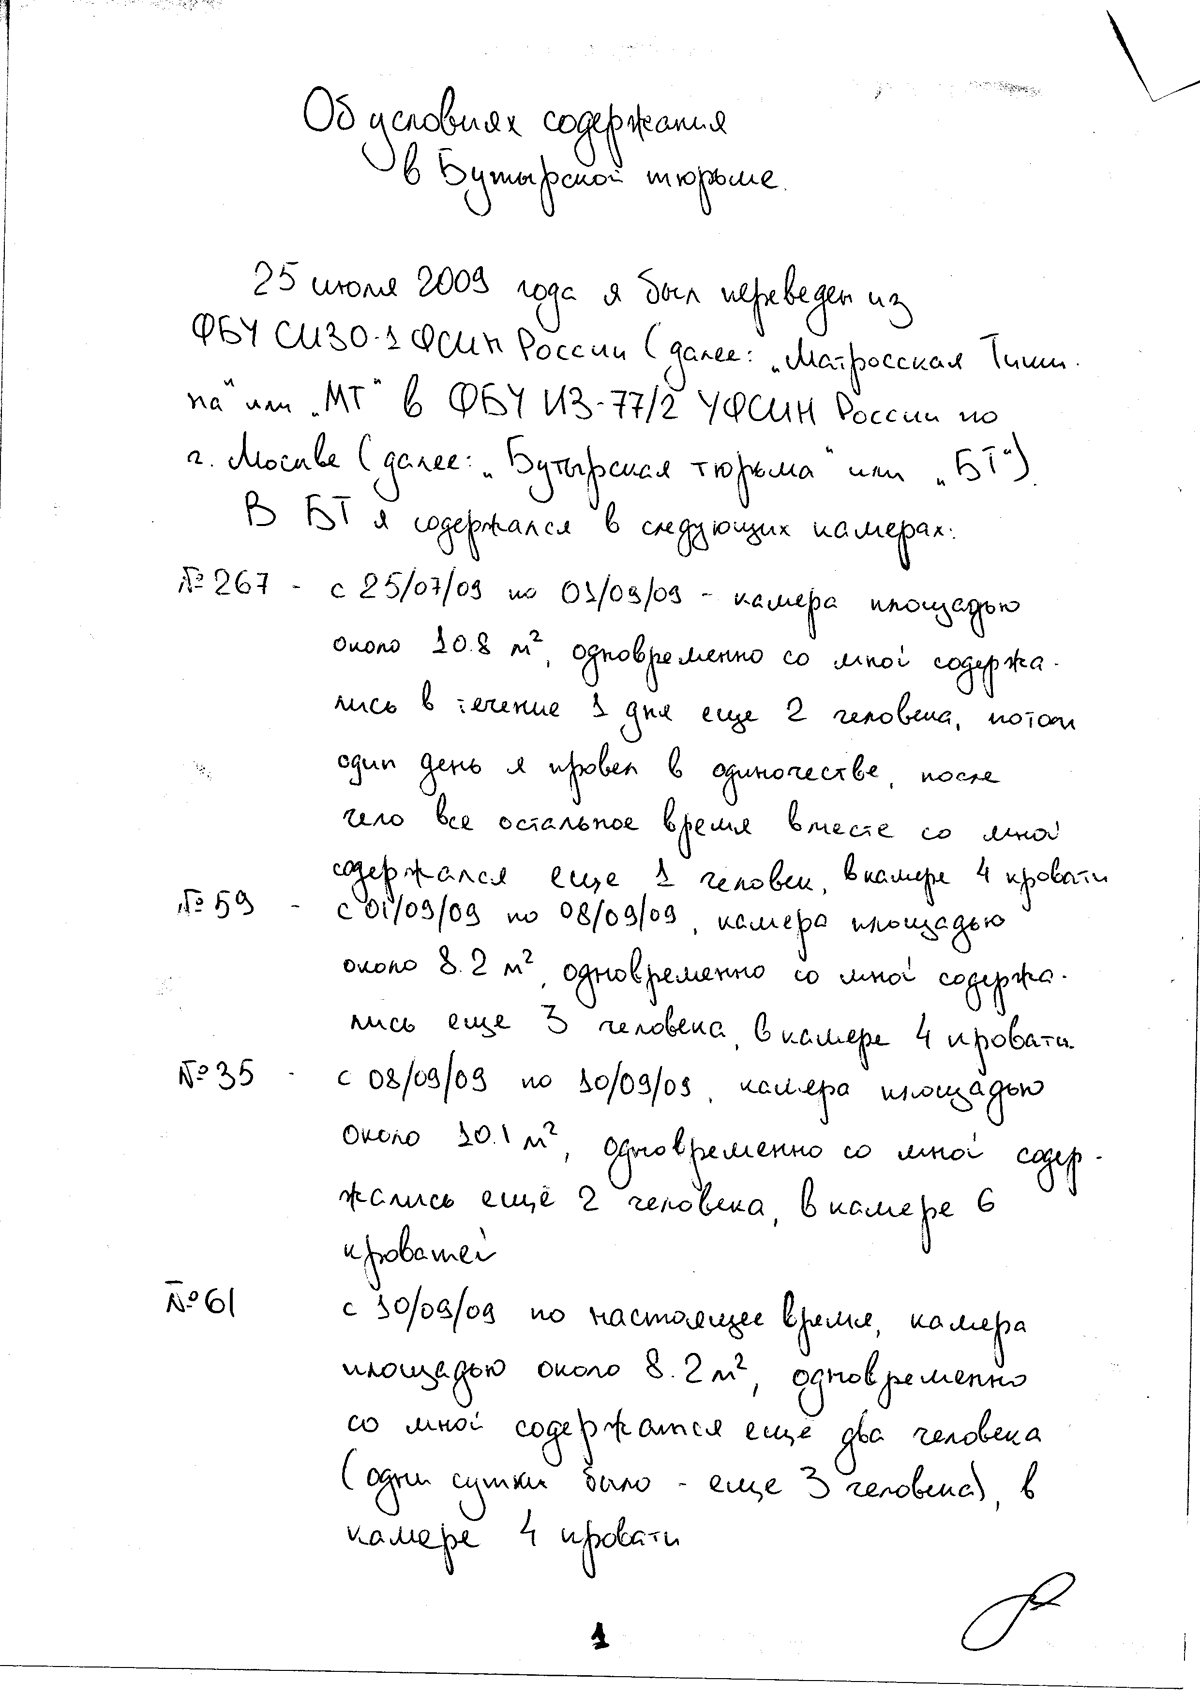 Сергей Магницкий описал условия содержания в Бутырской тюрьме на 44 страницах